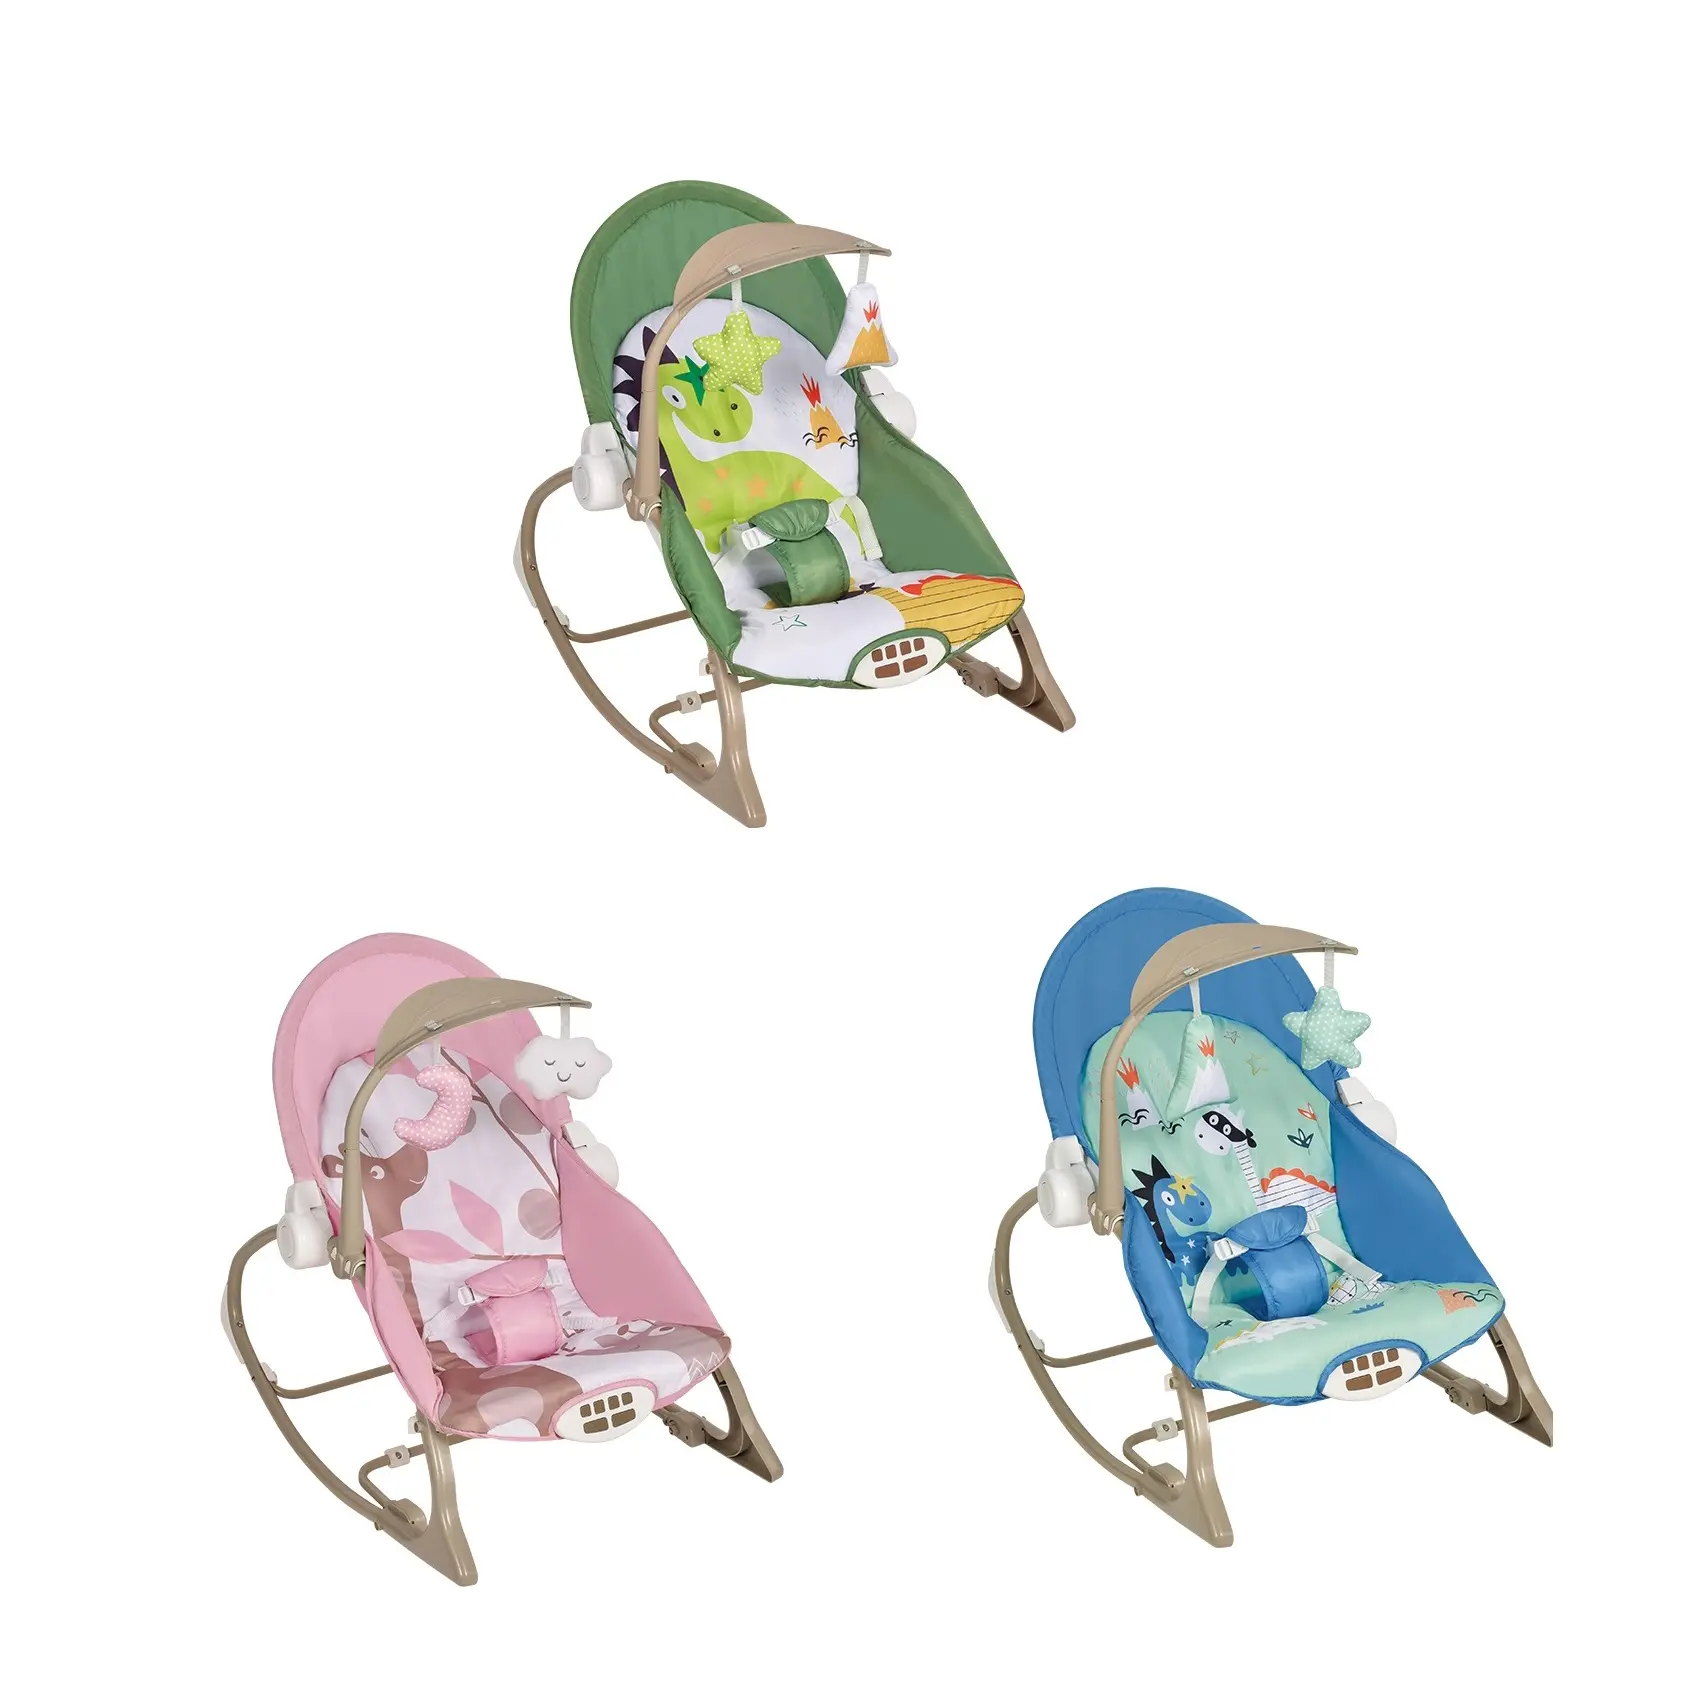 Baby reclinabile elettrico vibrante musica a dondolo per dormire sedia con pendente sonagli regolabile di sicurezza giocattolo elettrico per bambini